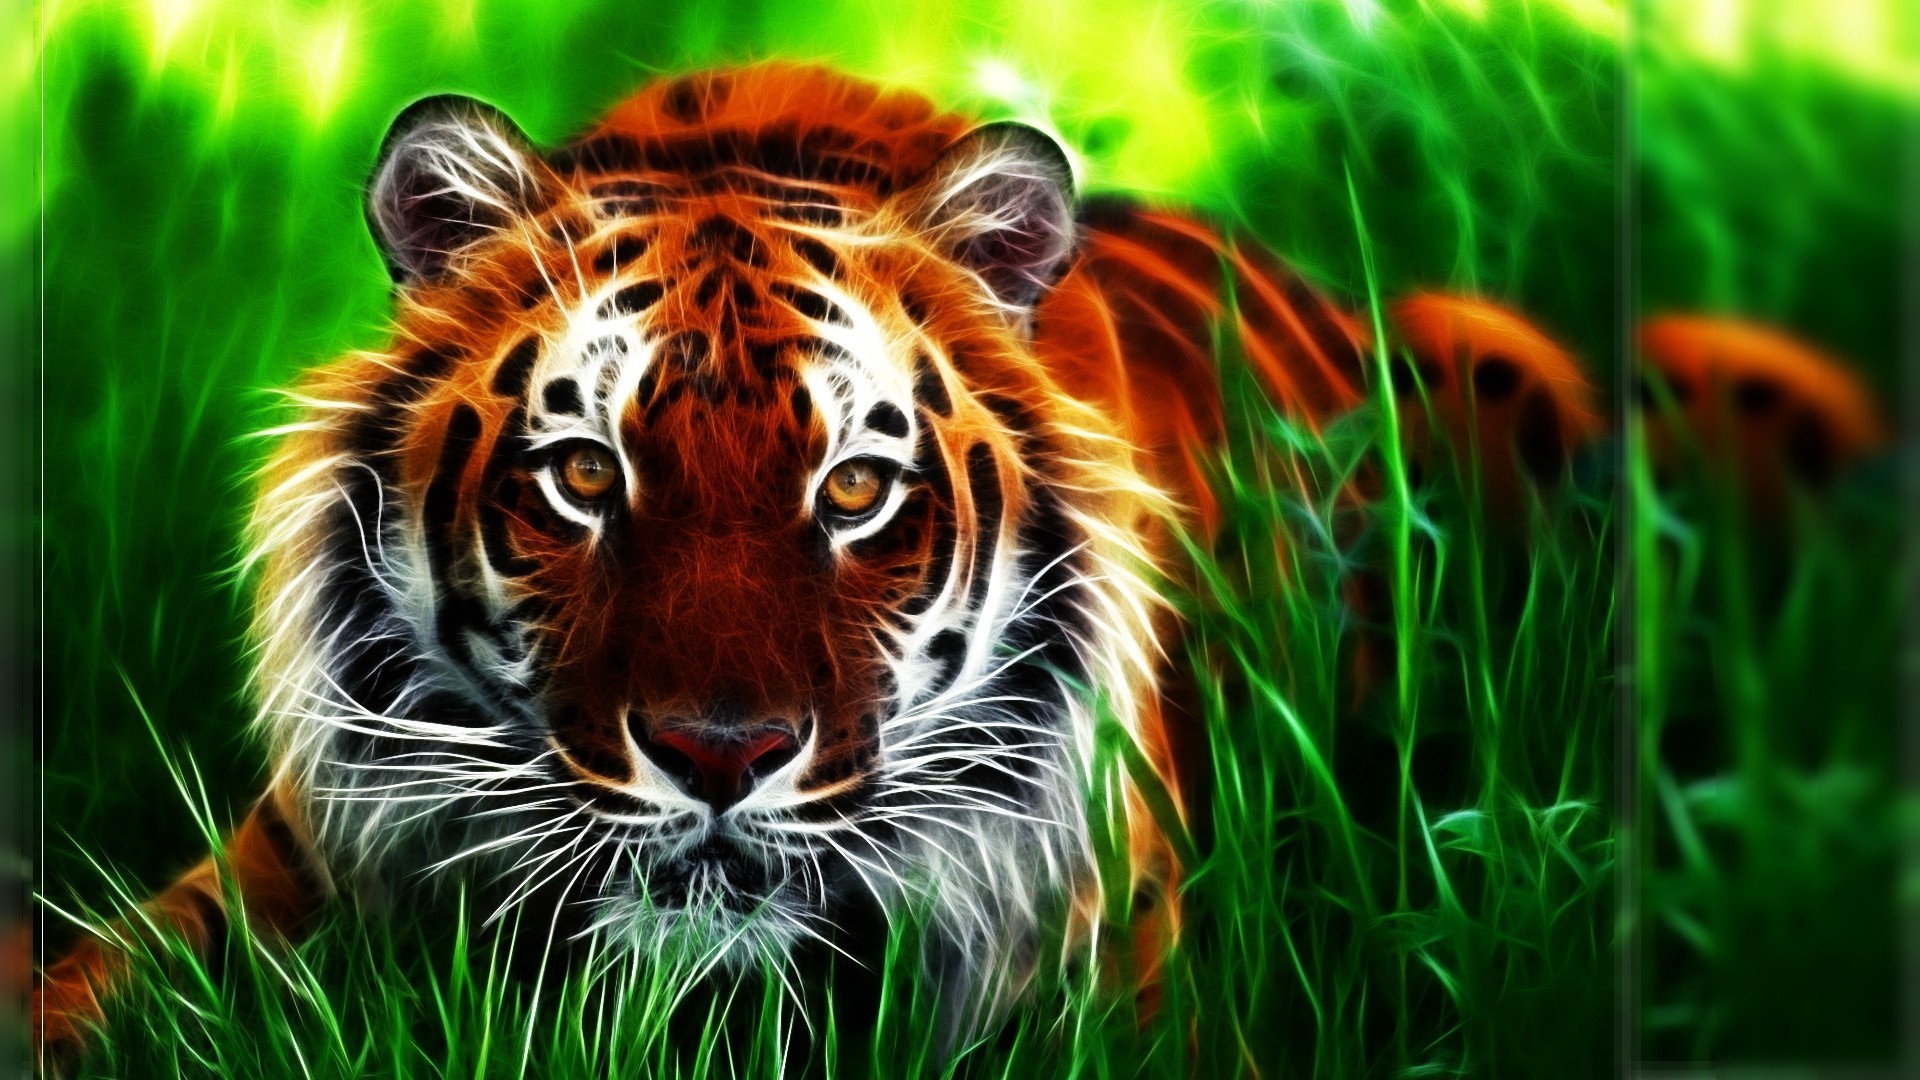 hd 3d tiger pics hd tiger wallpapers